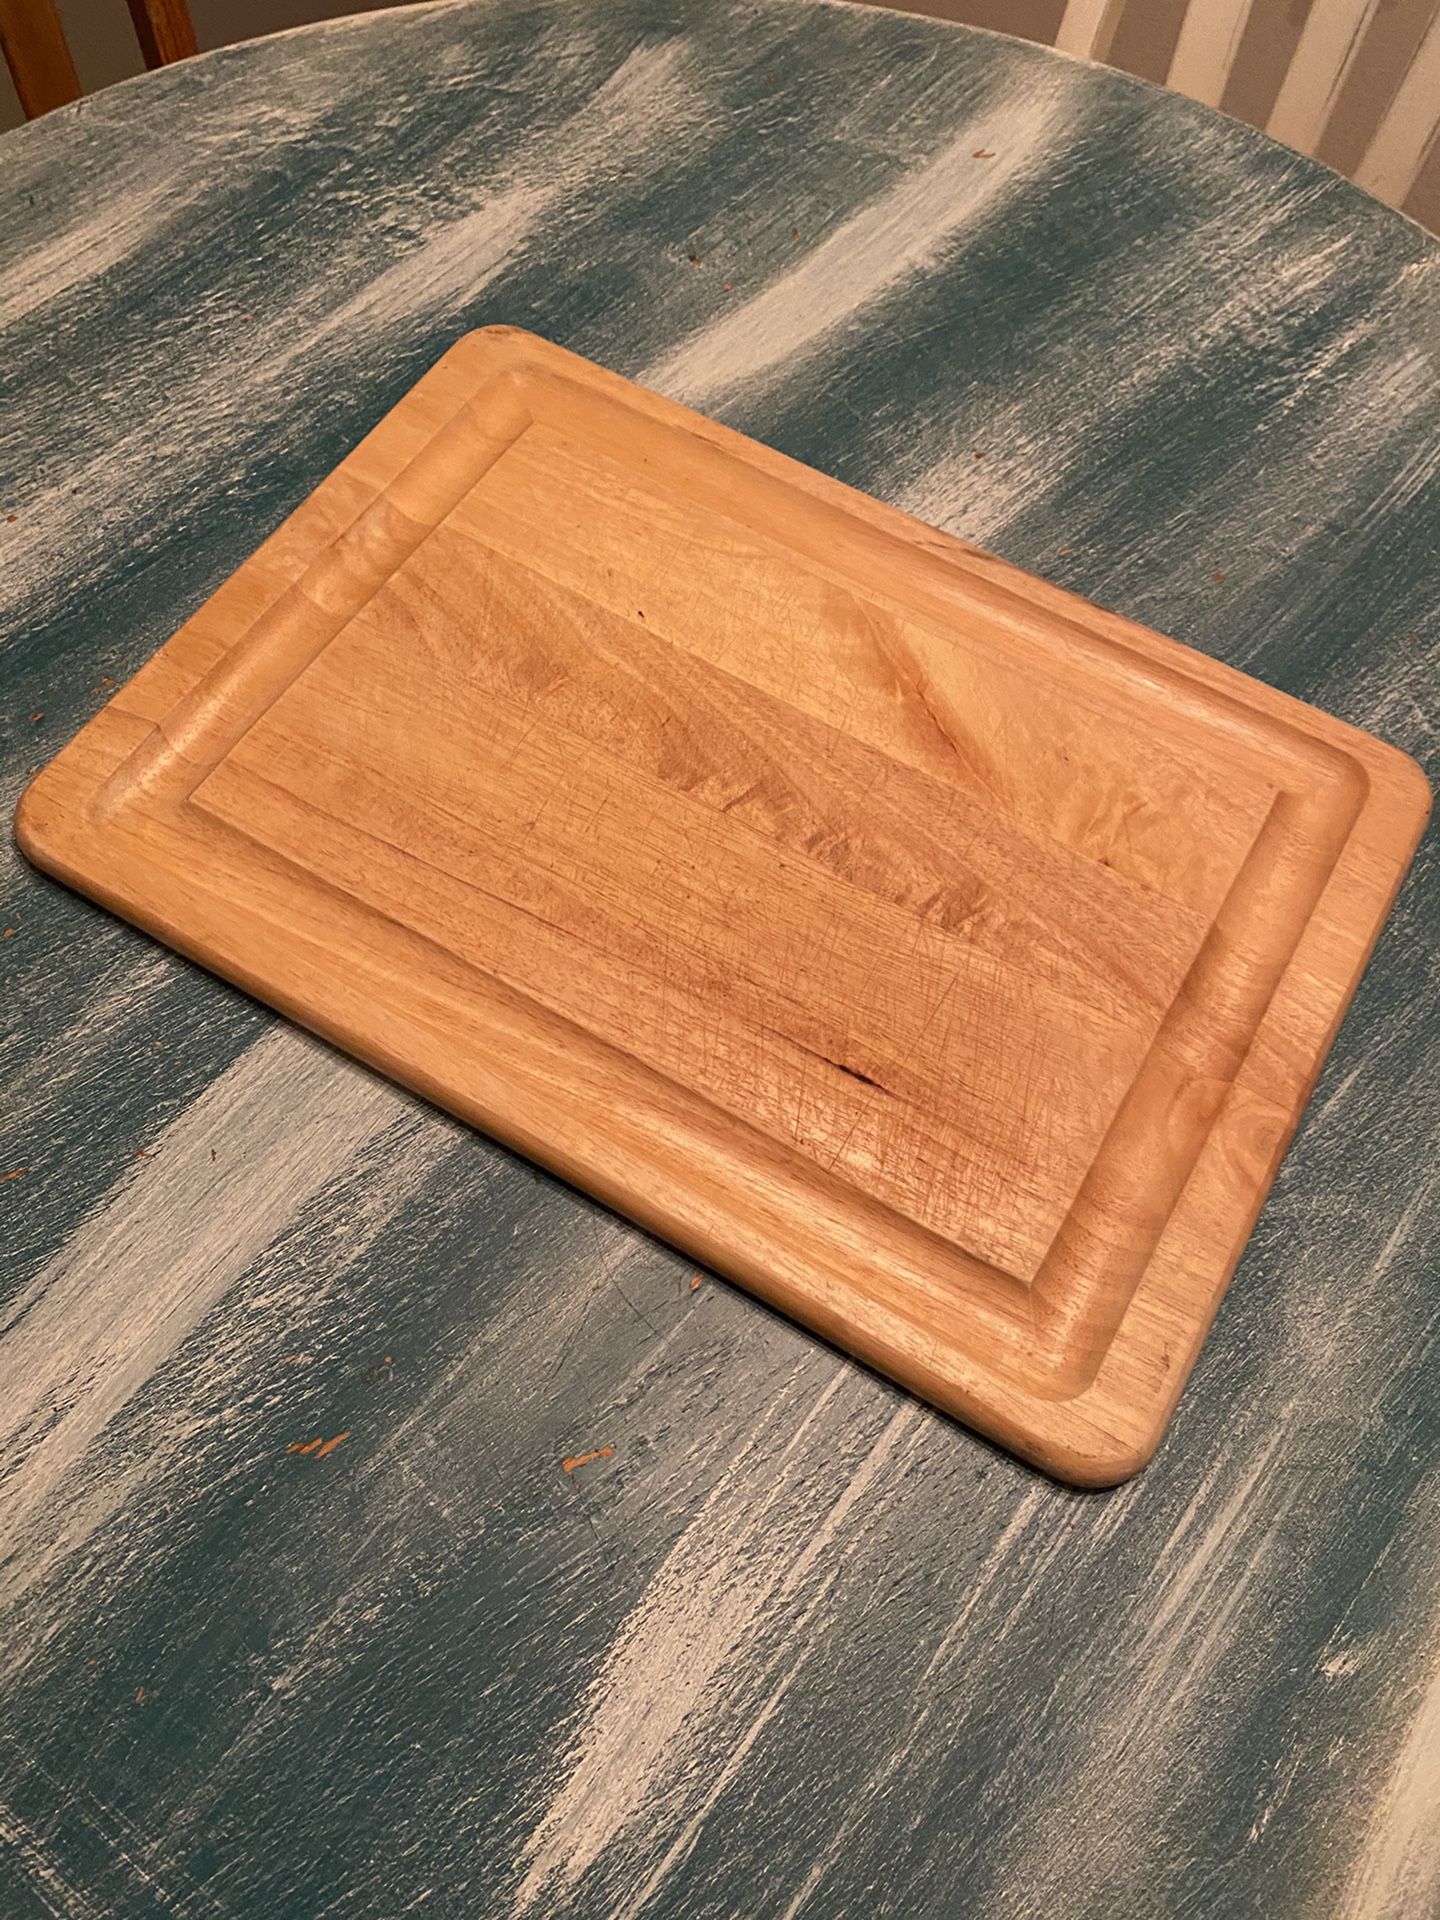 Wooden Cutting board $5